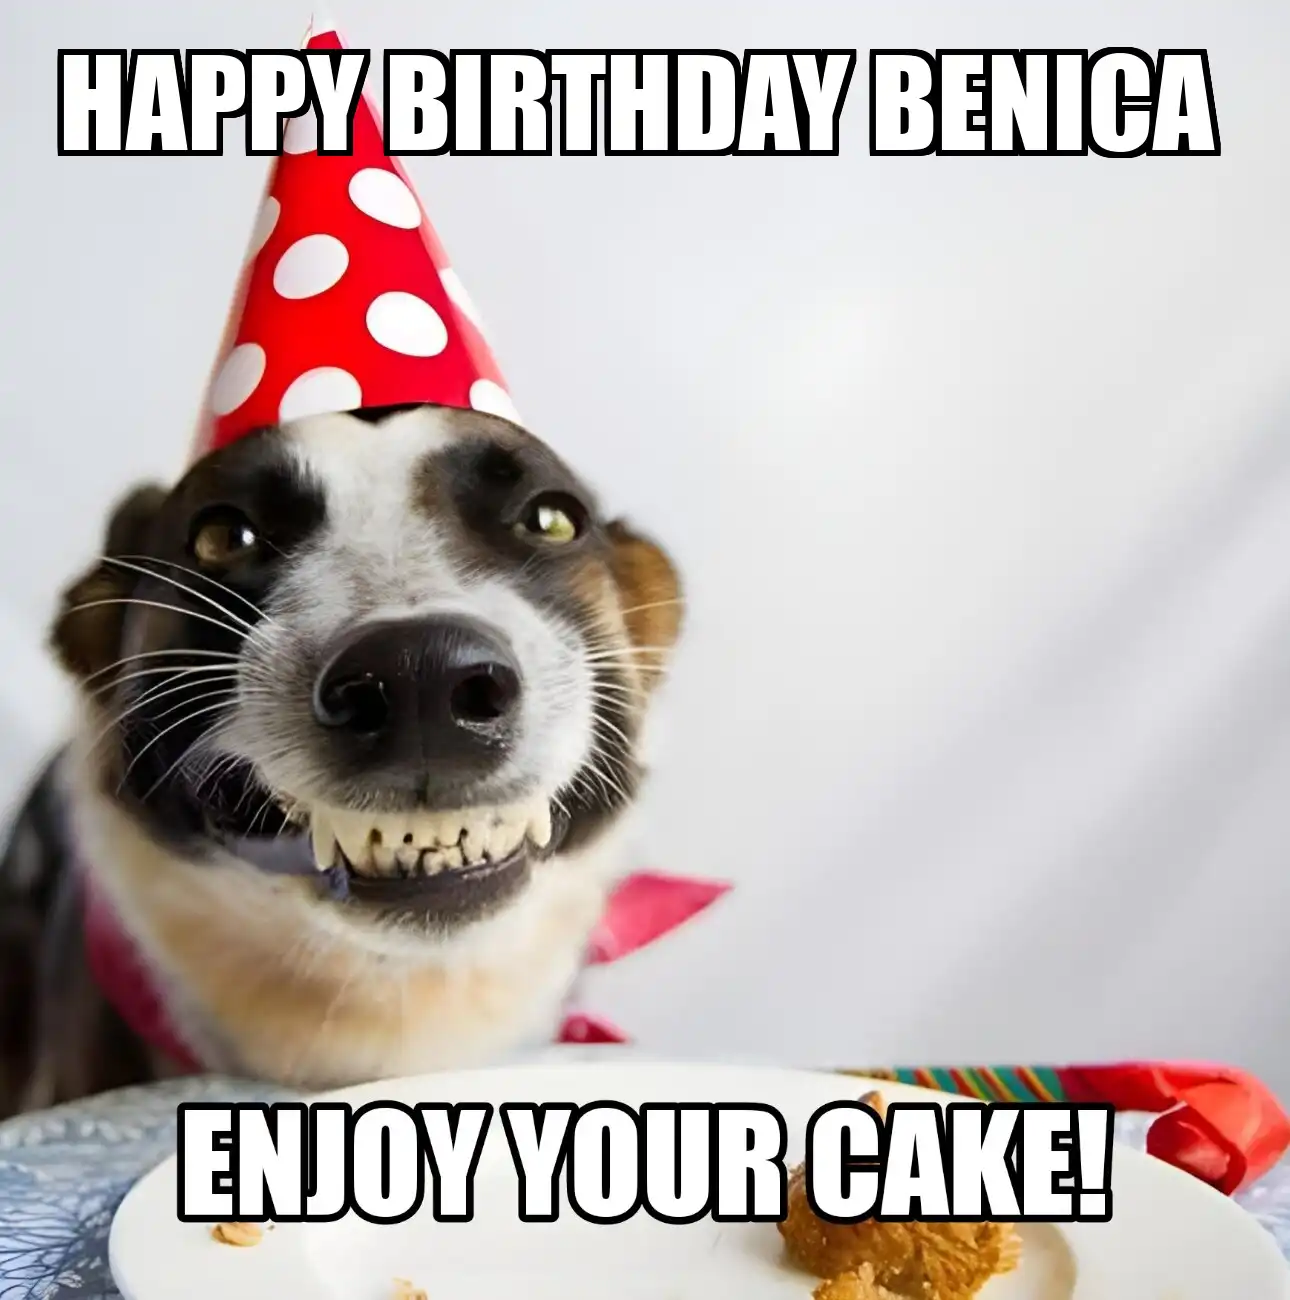 Happy Birthday Benica Enjoy Your Cake Dog Meme